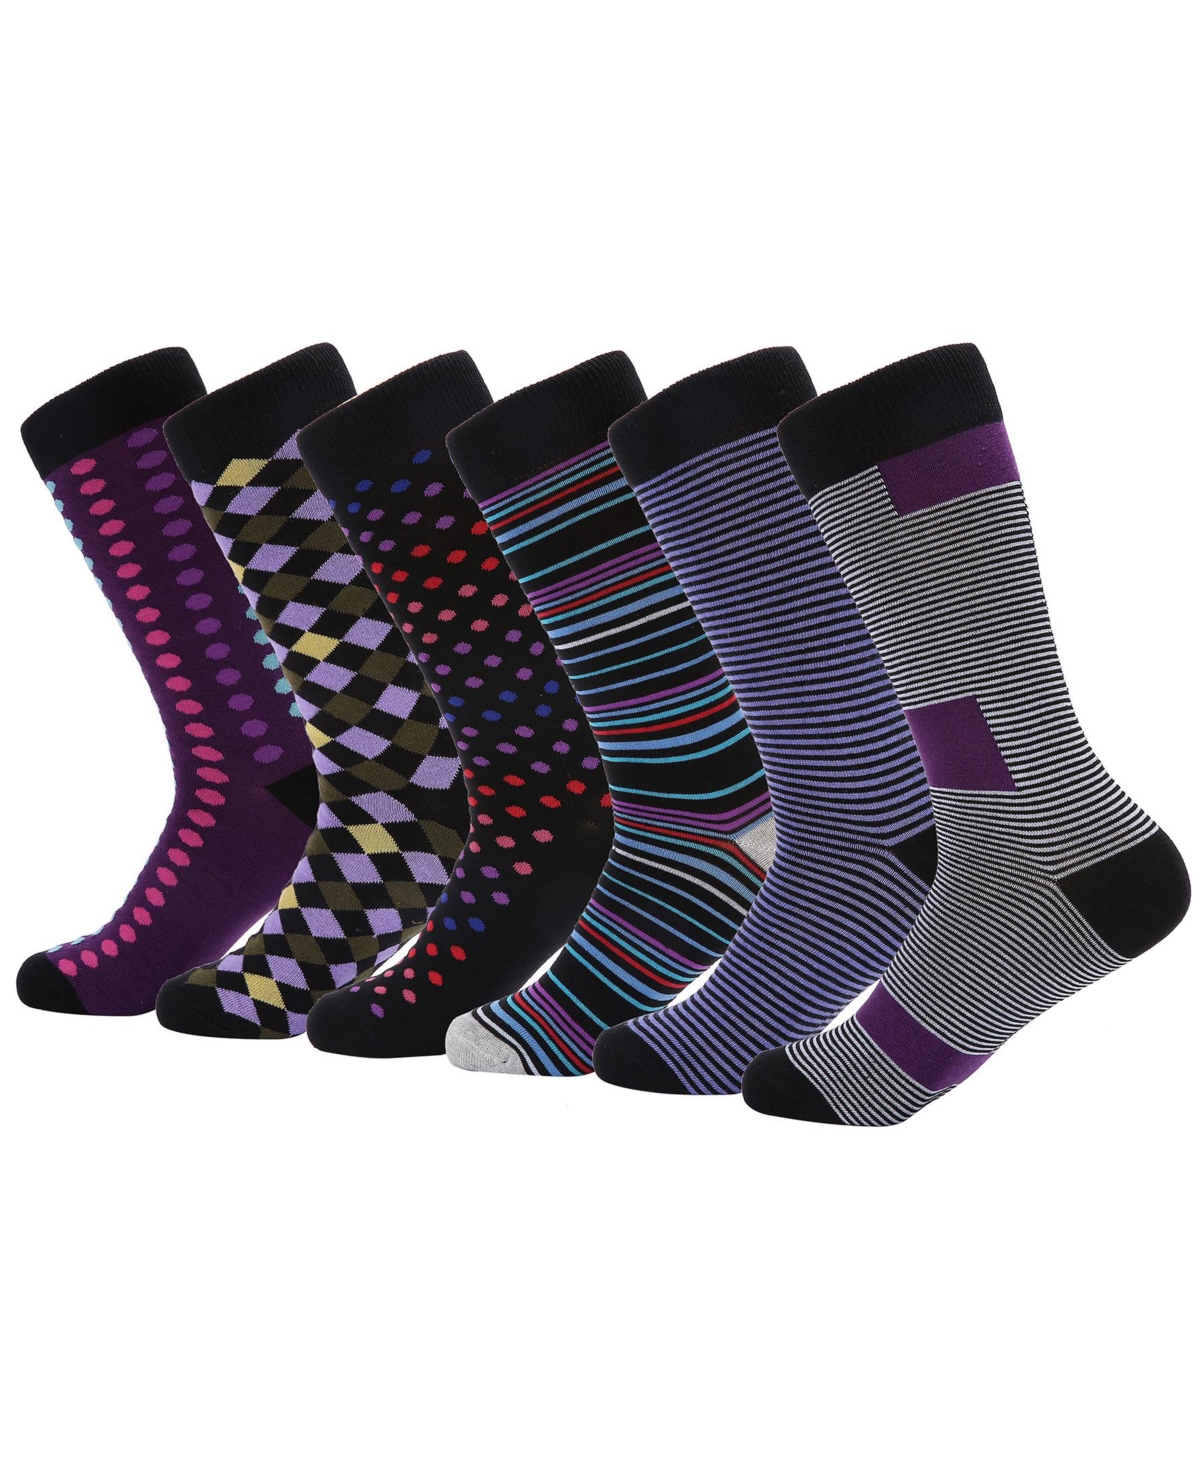 Men's Kaleidoscopic Funky Dress Socks - Groovy cluster